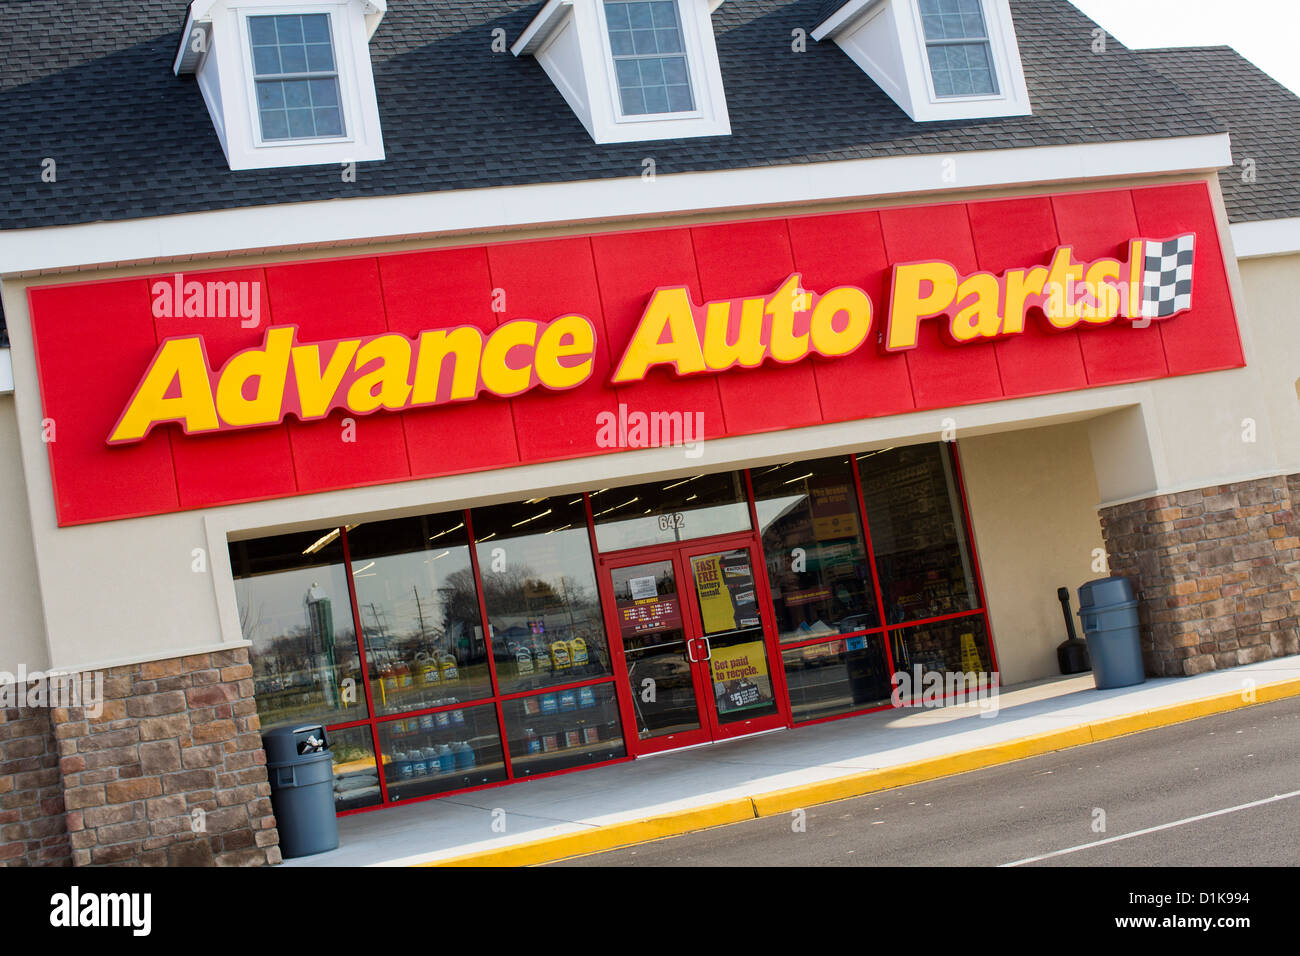 Une avance Auto Parts store. Banque D'Images